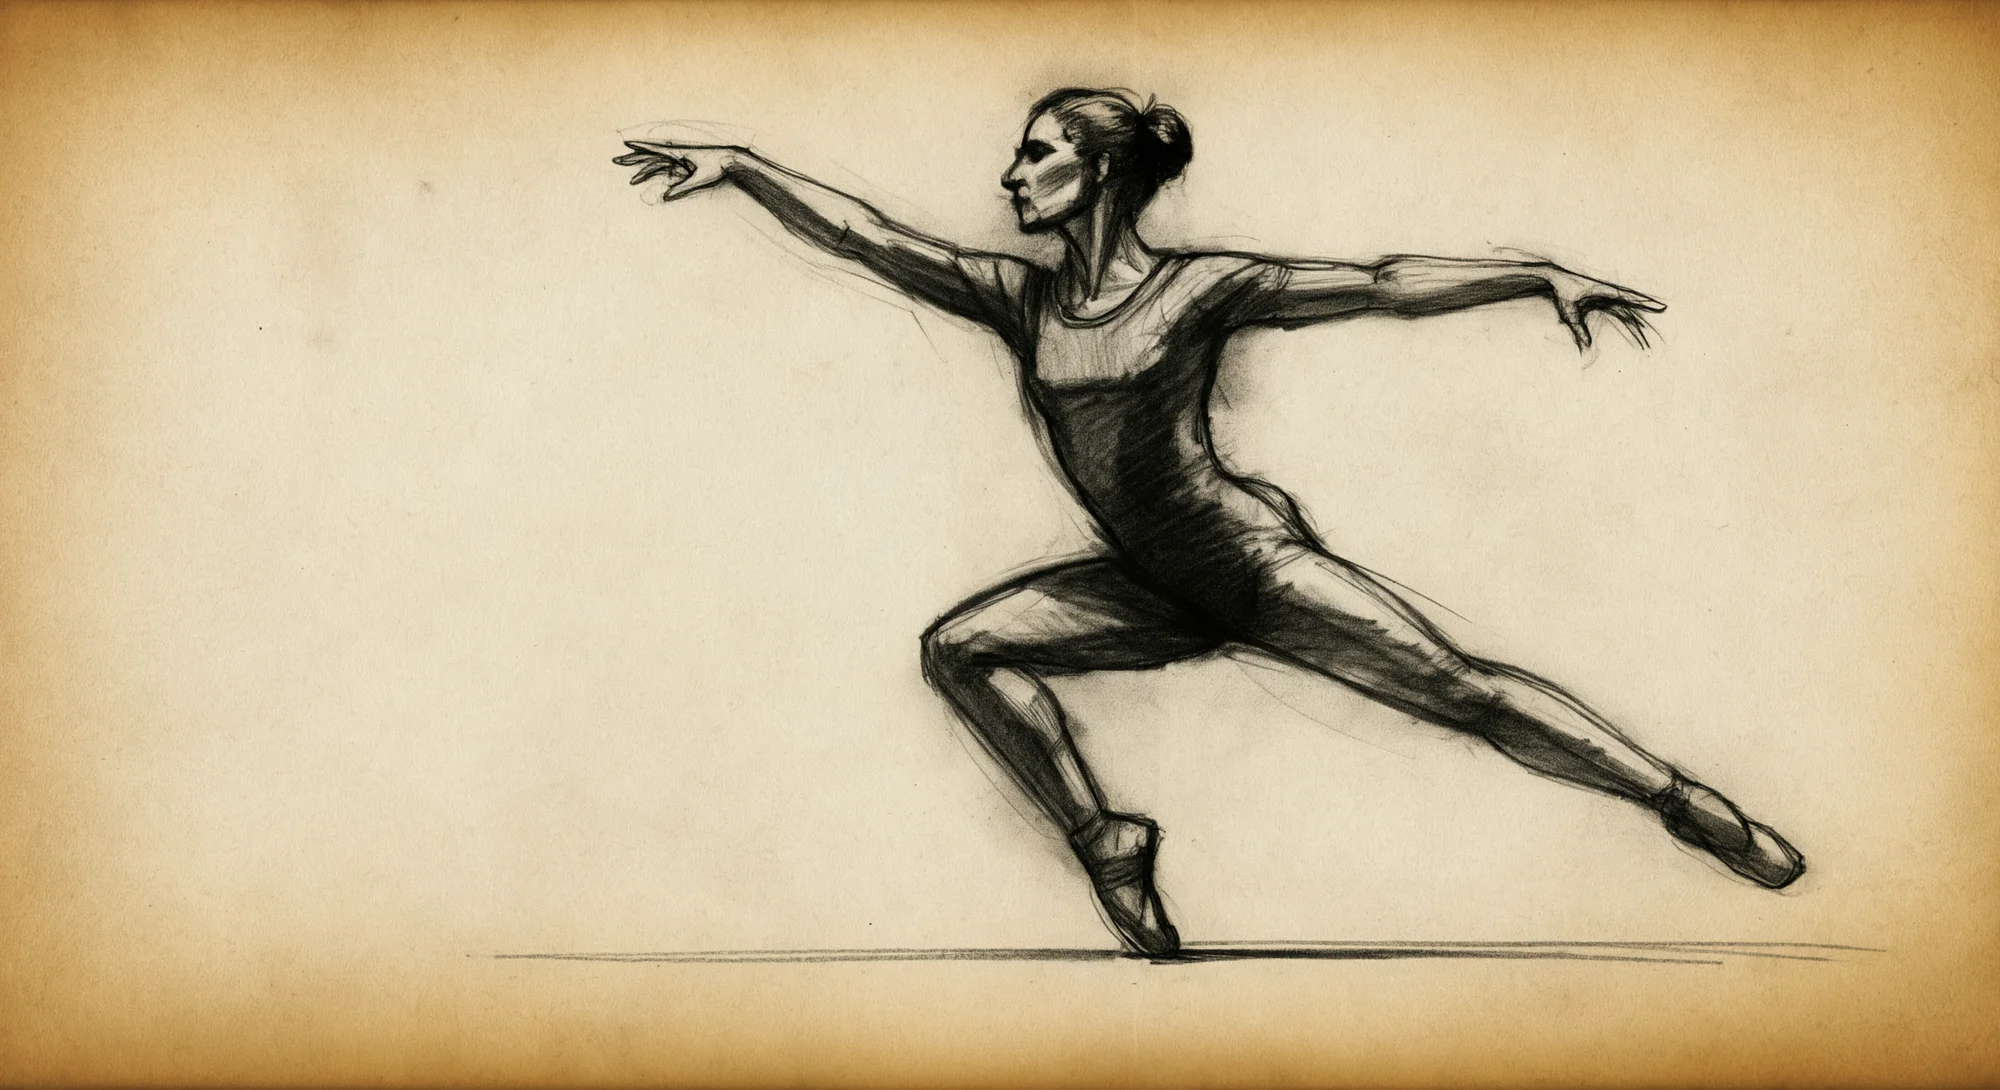 Un croquis au fusain d'une danseuse la capturant au milieu d'un mouvement dynamique. Le croquis est réalisé sur du papier parchemin vieilli.